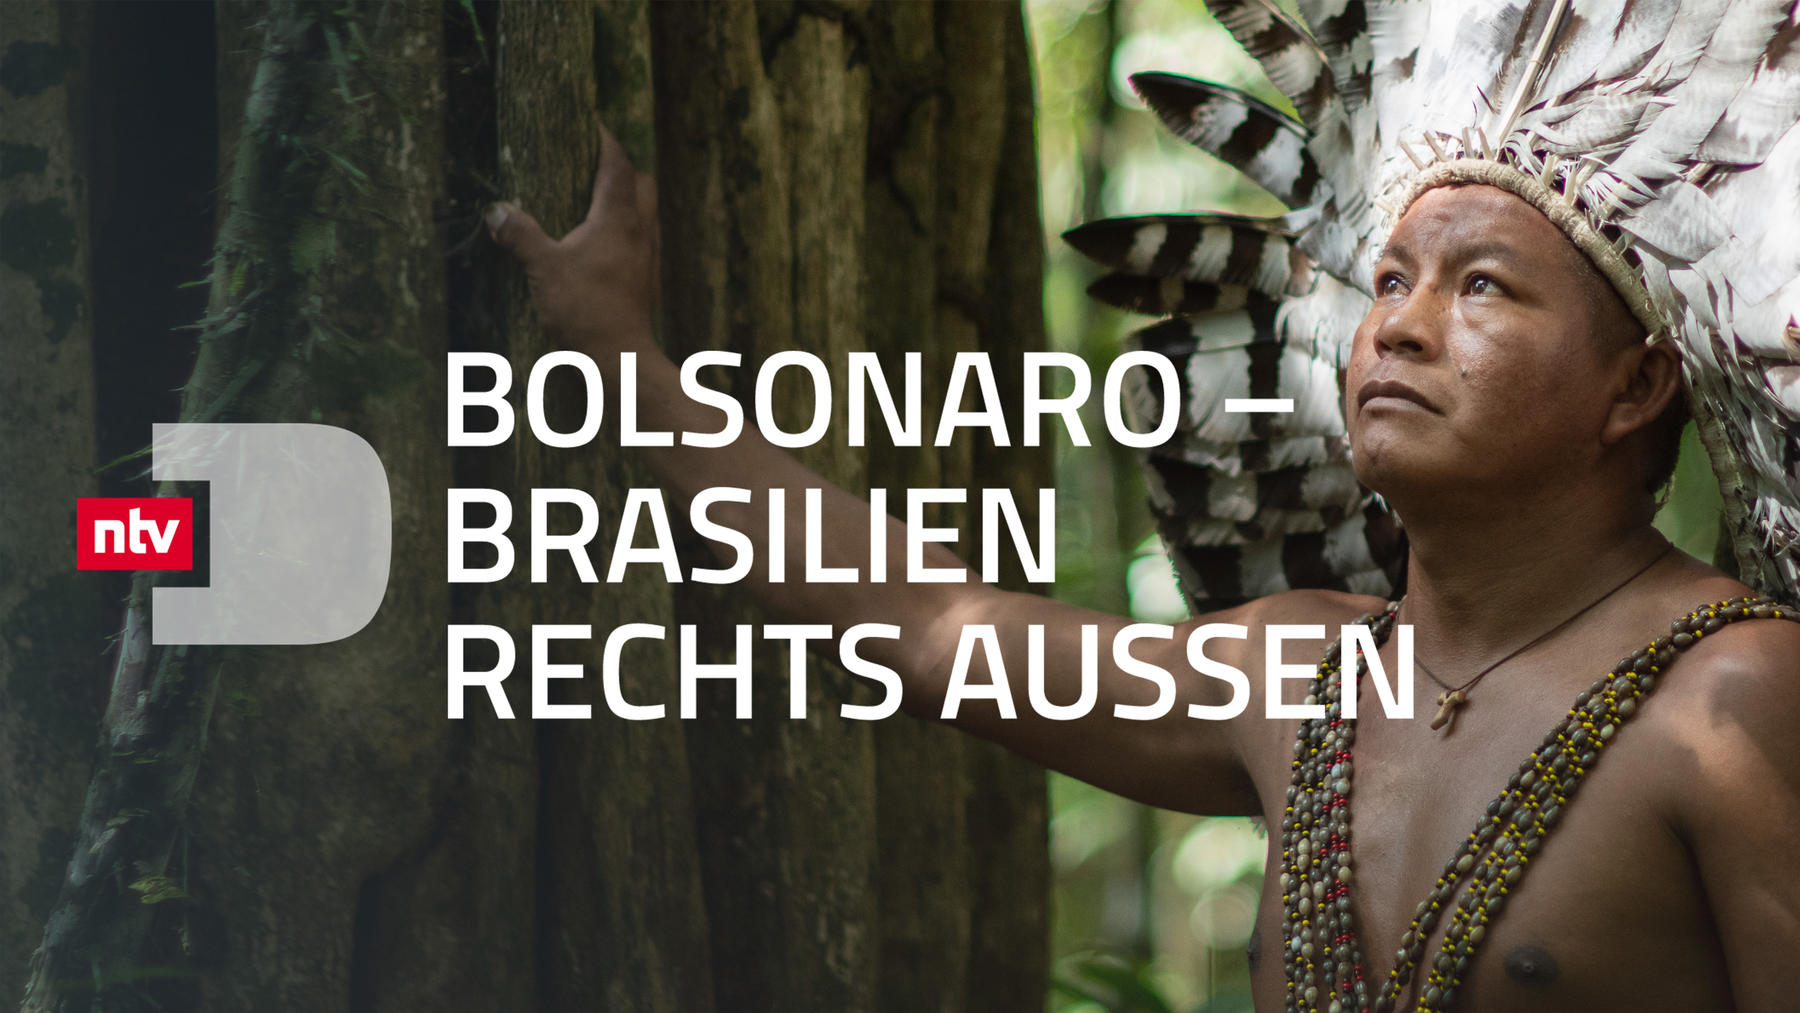 Bolsonaro - Brasilien rechts außen